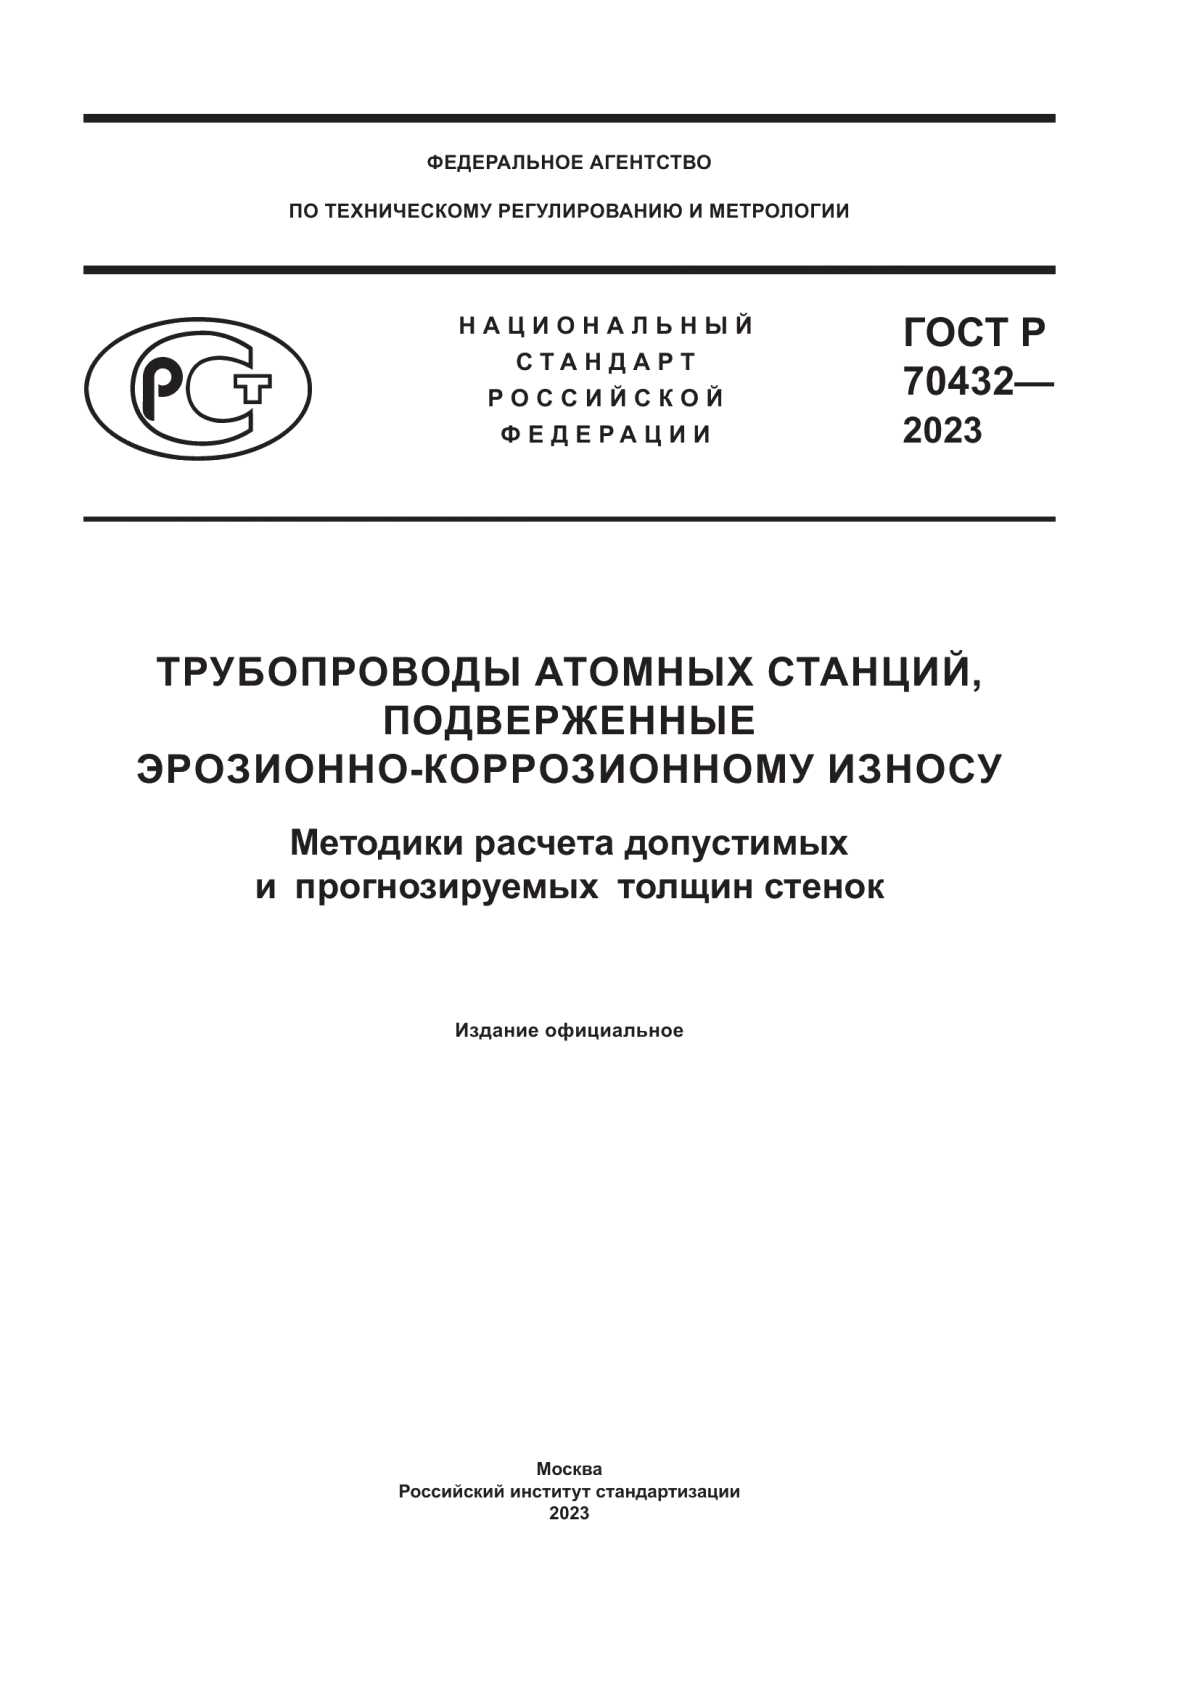 ГОСТ Р 70432-2023 Трубопроводы атомных станций, подверженные эрозионно-коррозионному износу. Методики расчета допустимых и прогнозируемых толщин стенок